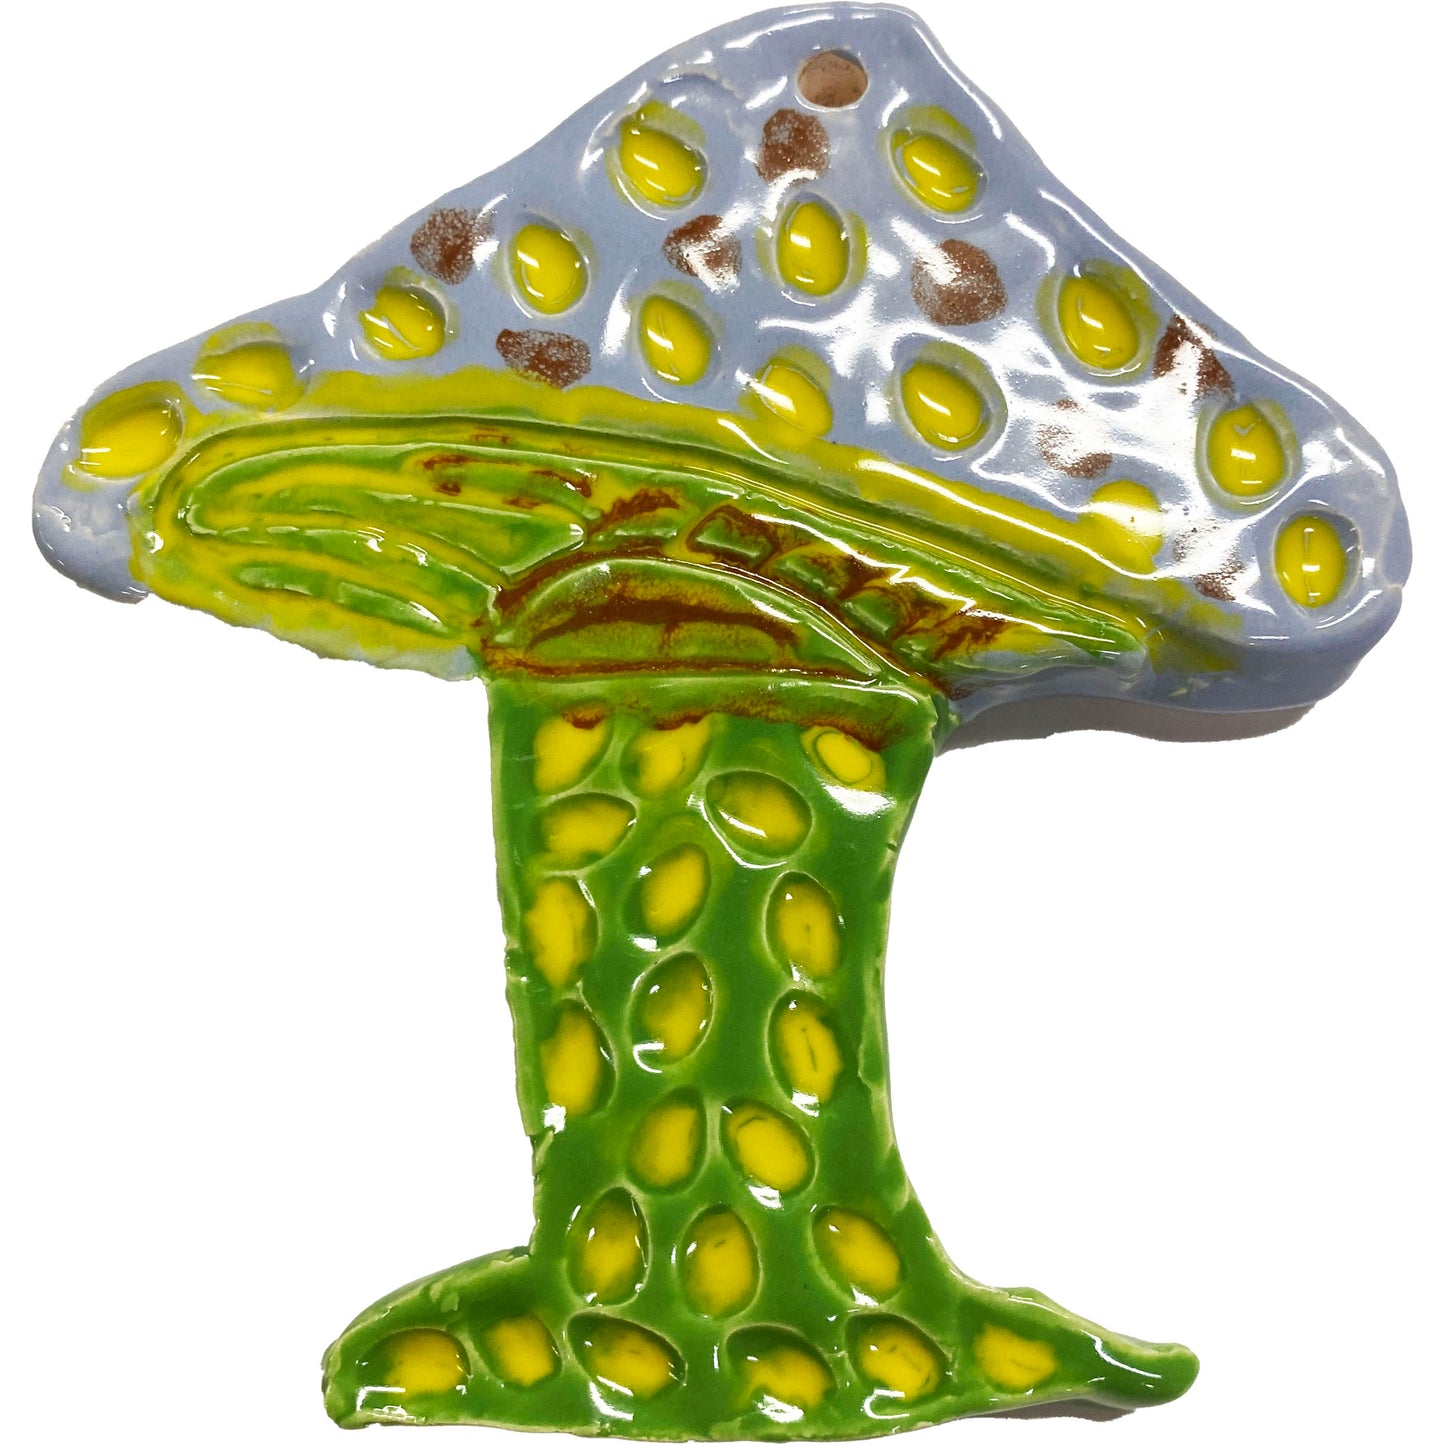 Ceramic Arts Handmade Clay Crafts Glazed 5-inch x 4.5-inch Mushroom made by Morgan Fox